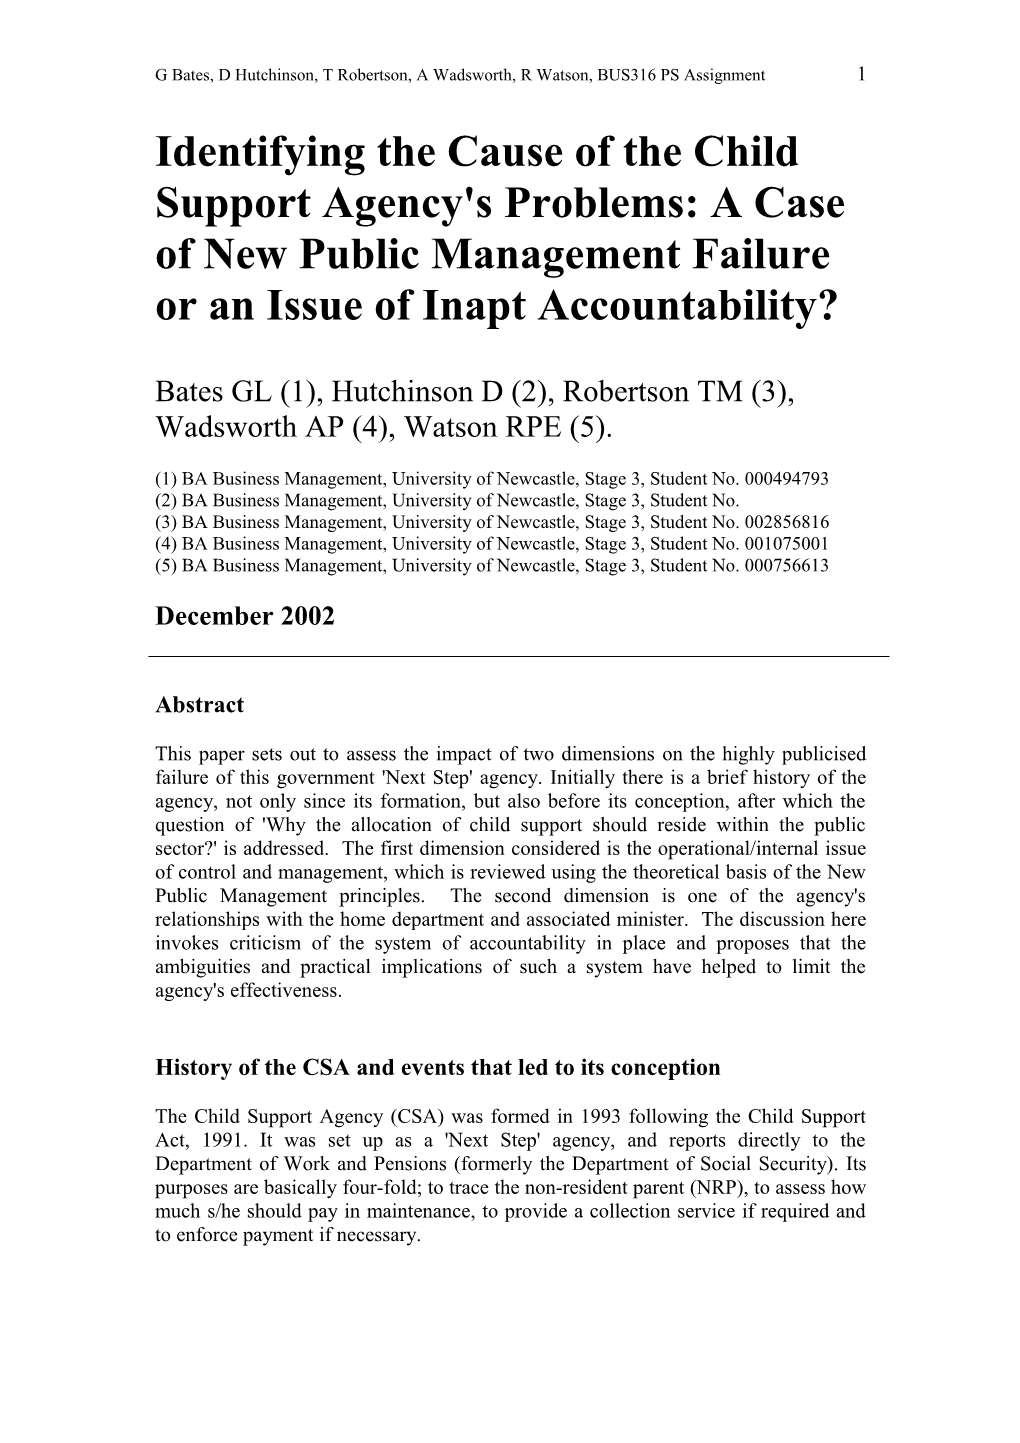 Public Services Management